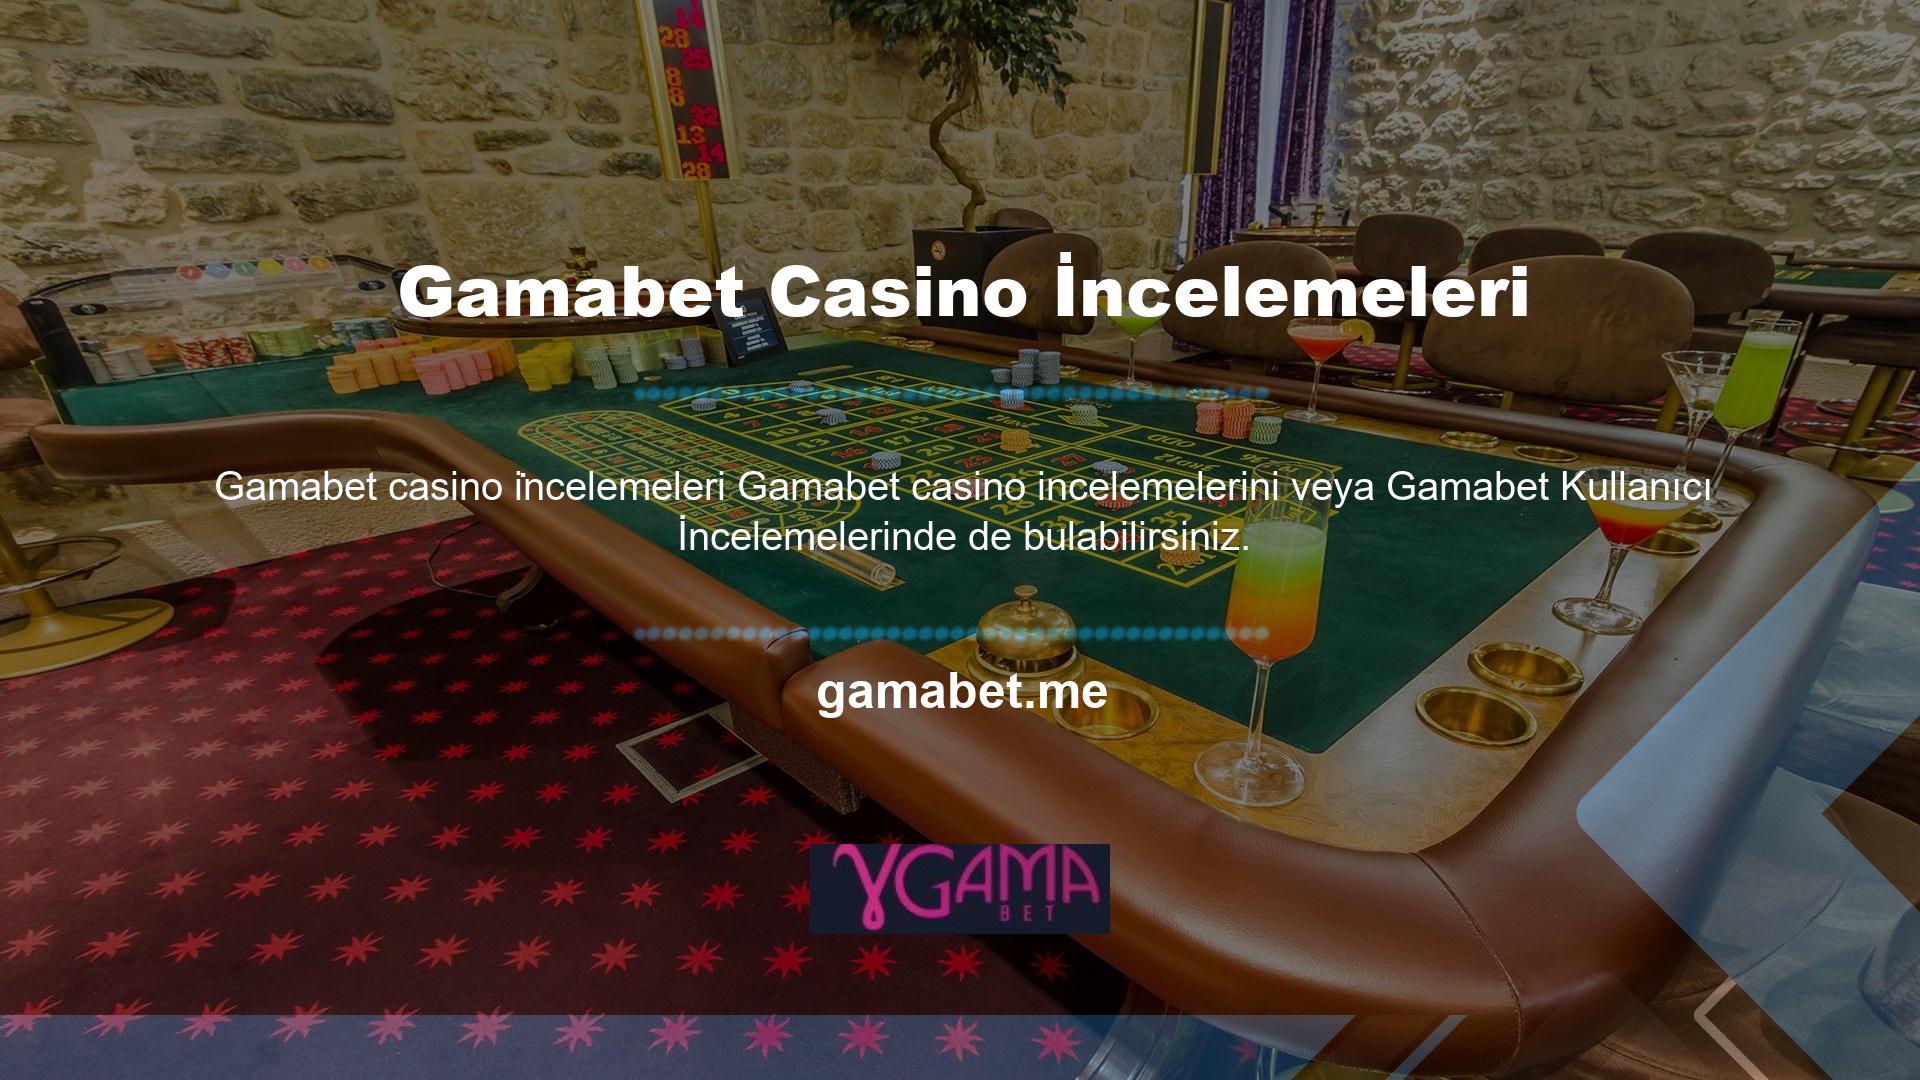 Bu, casino slotları, canlı casino, poker, bingo ve benzeri oyunlar ile çevrimiçi para kazanma fırsatı sunan bir web sitesidir